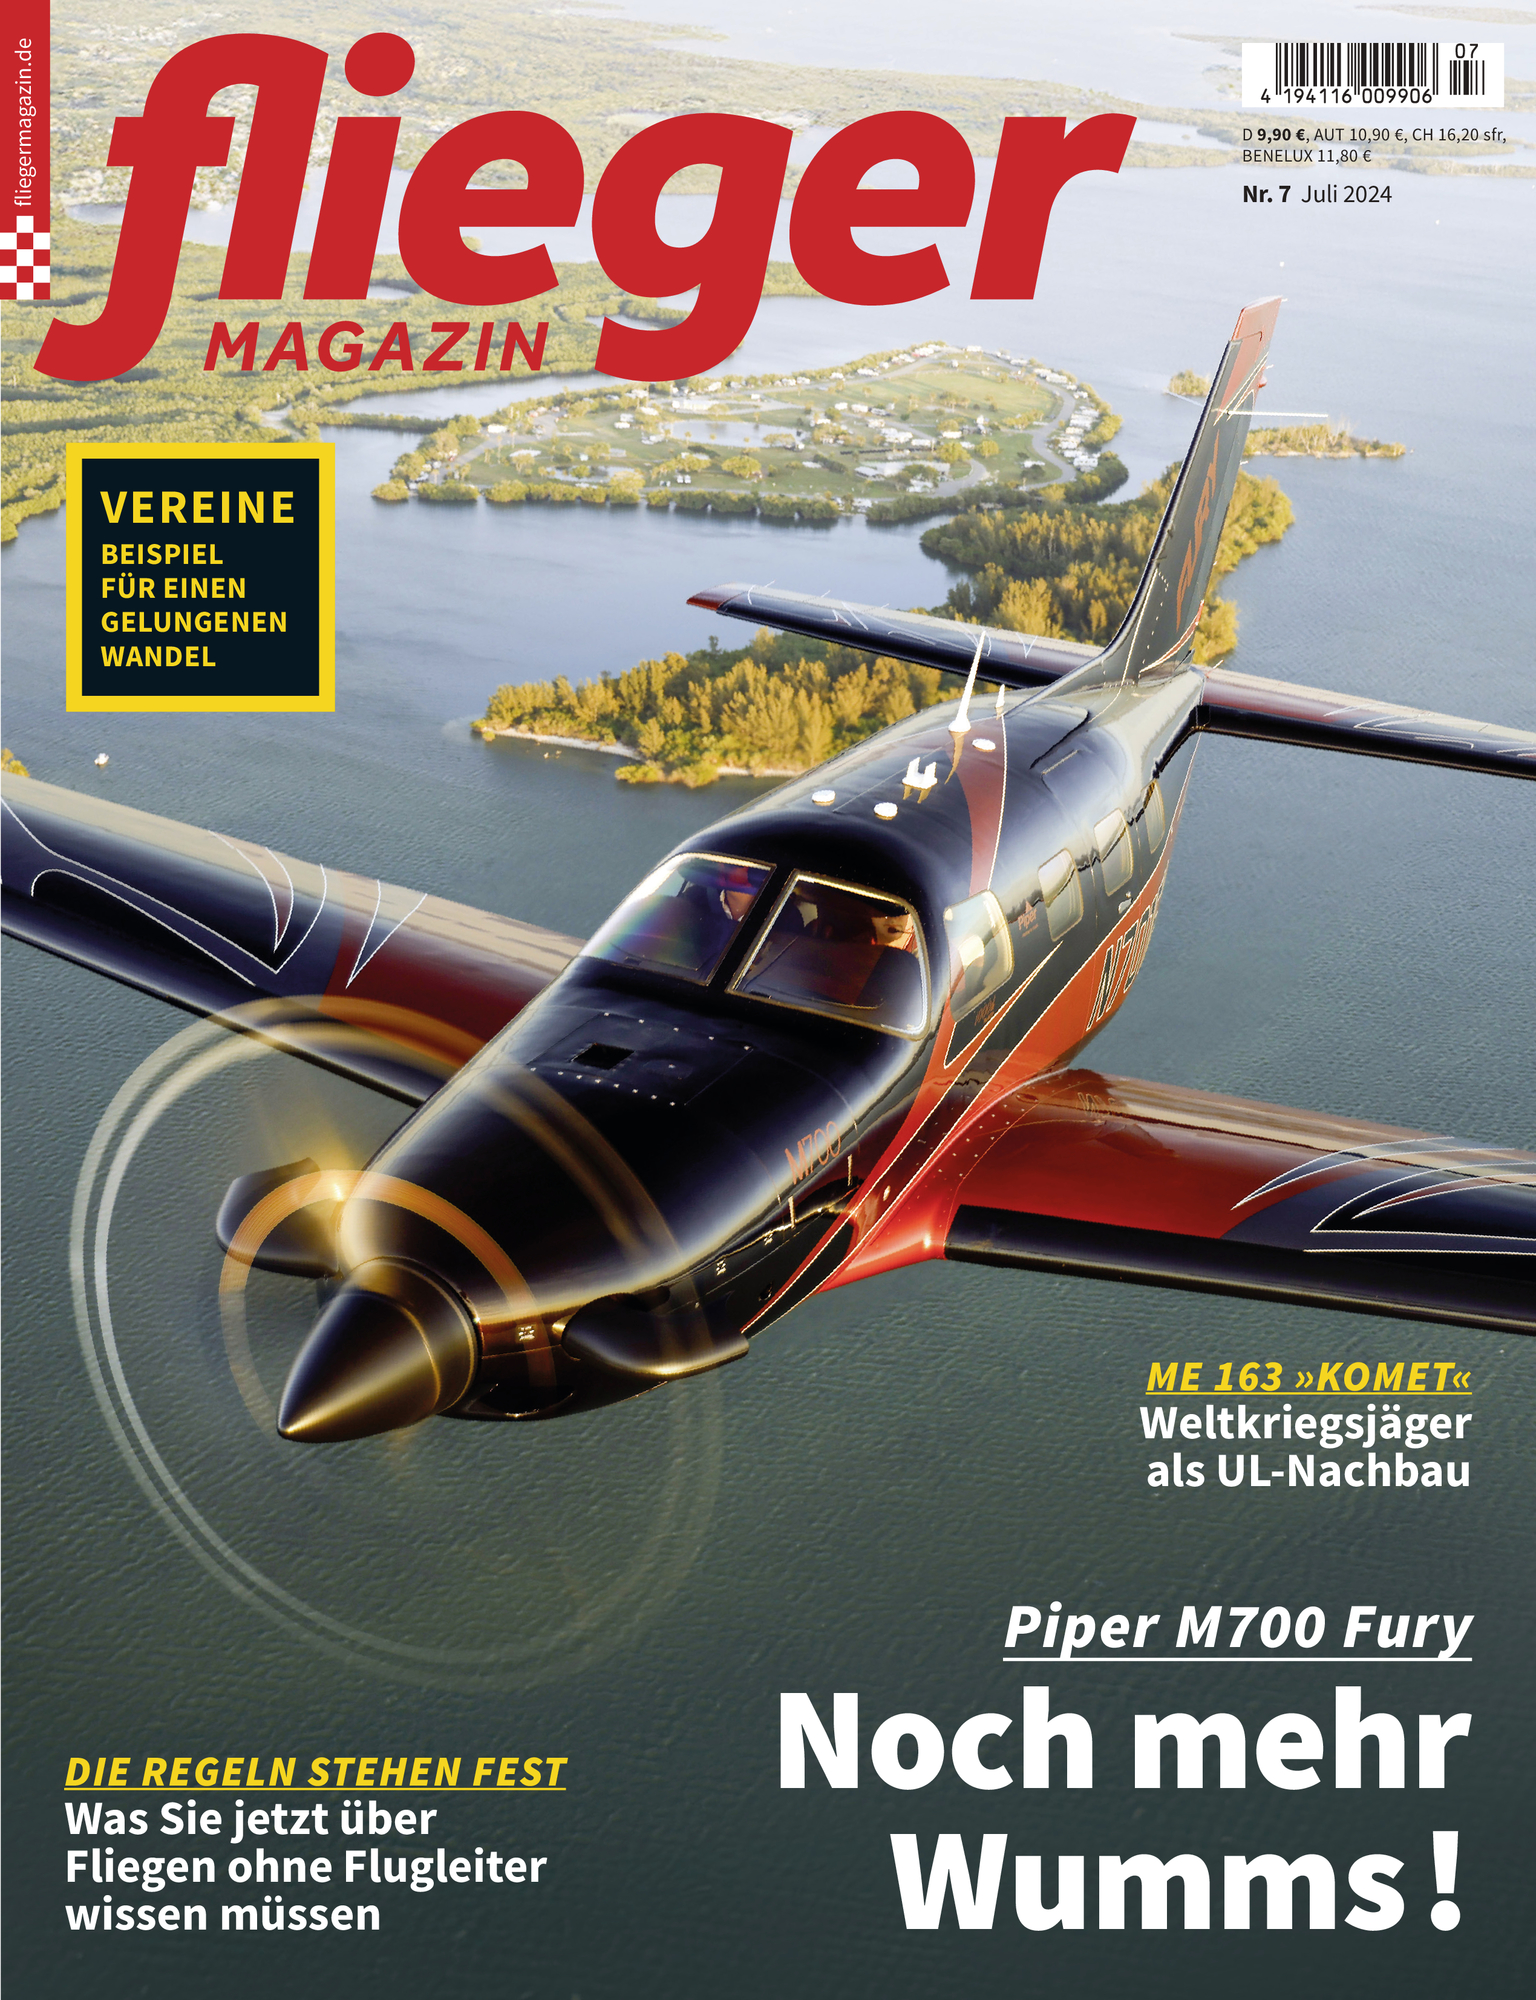 Jahresabo fliegermagazin für 130,80